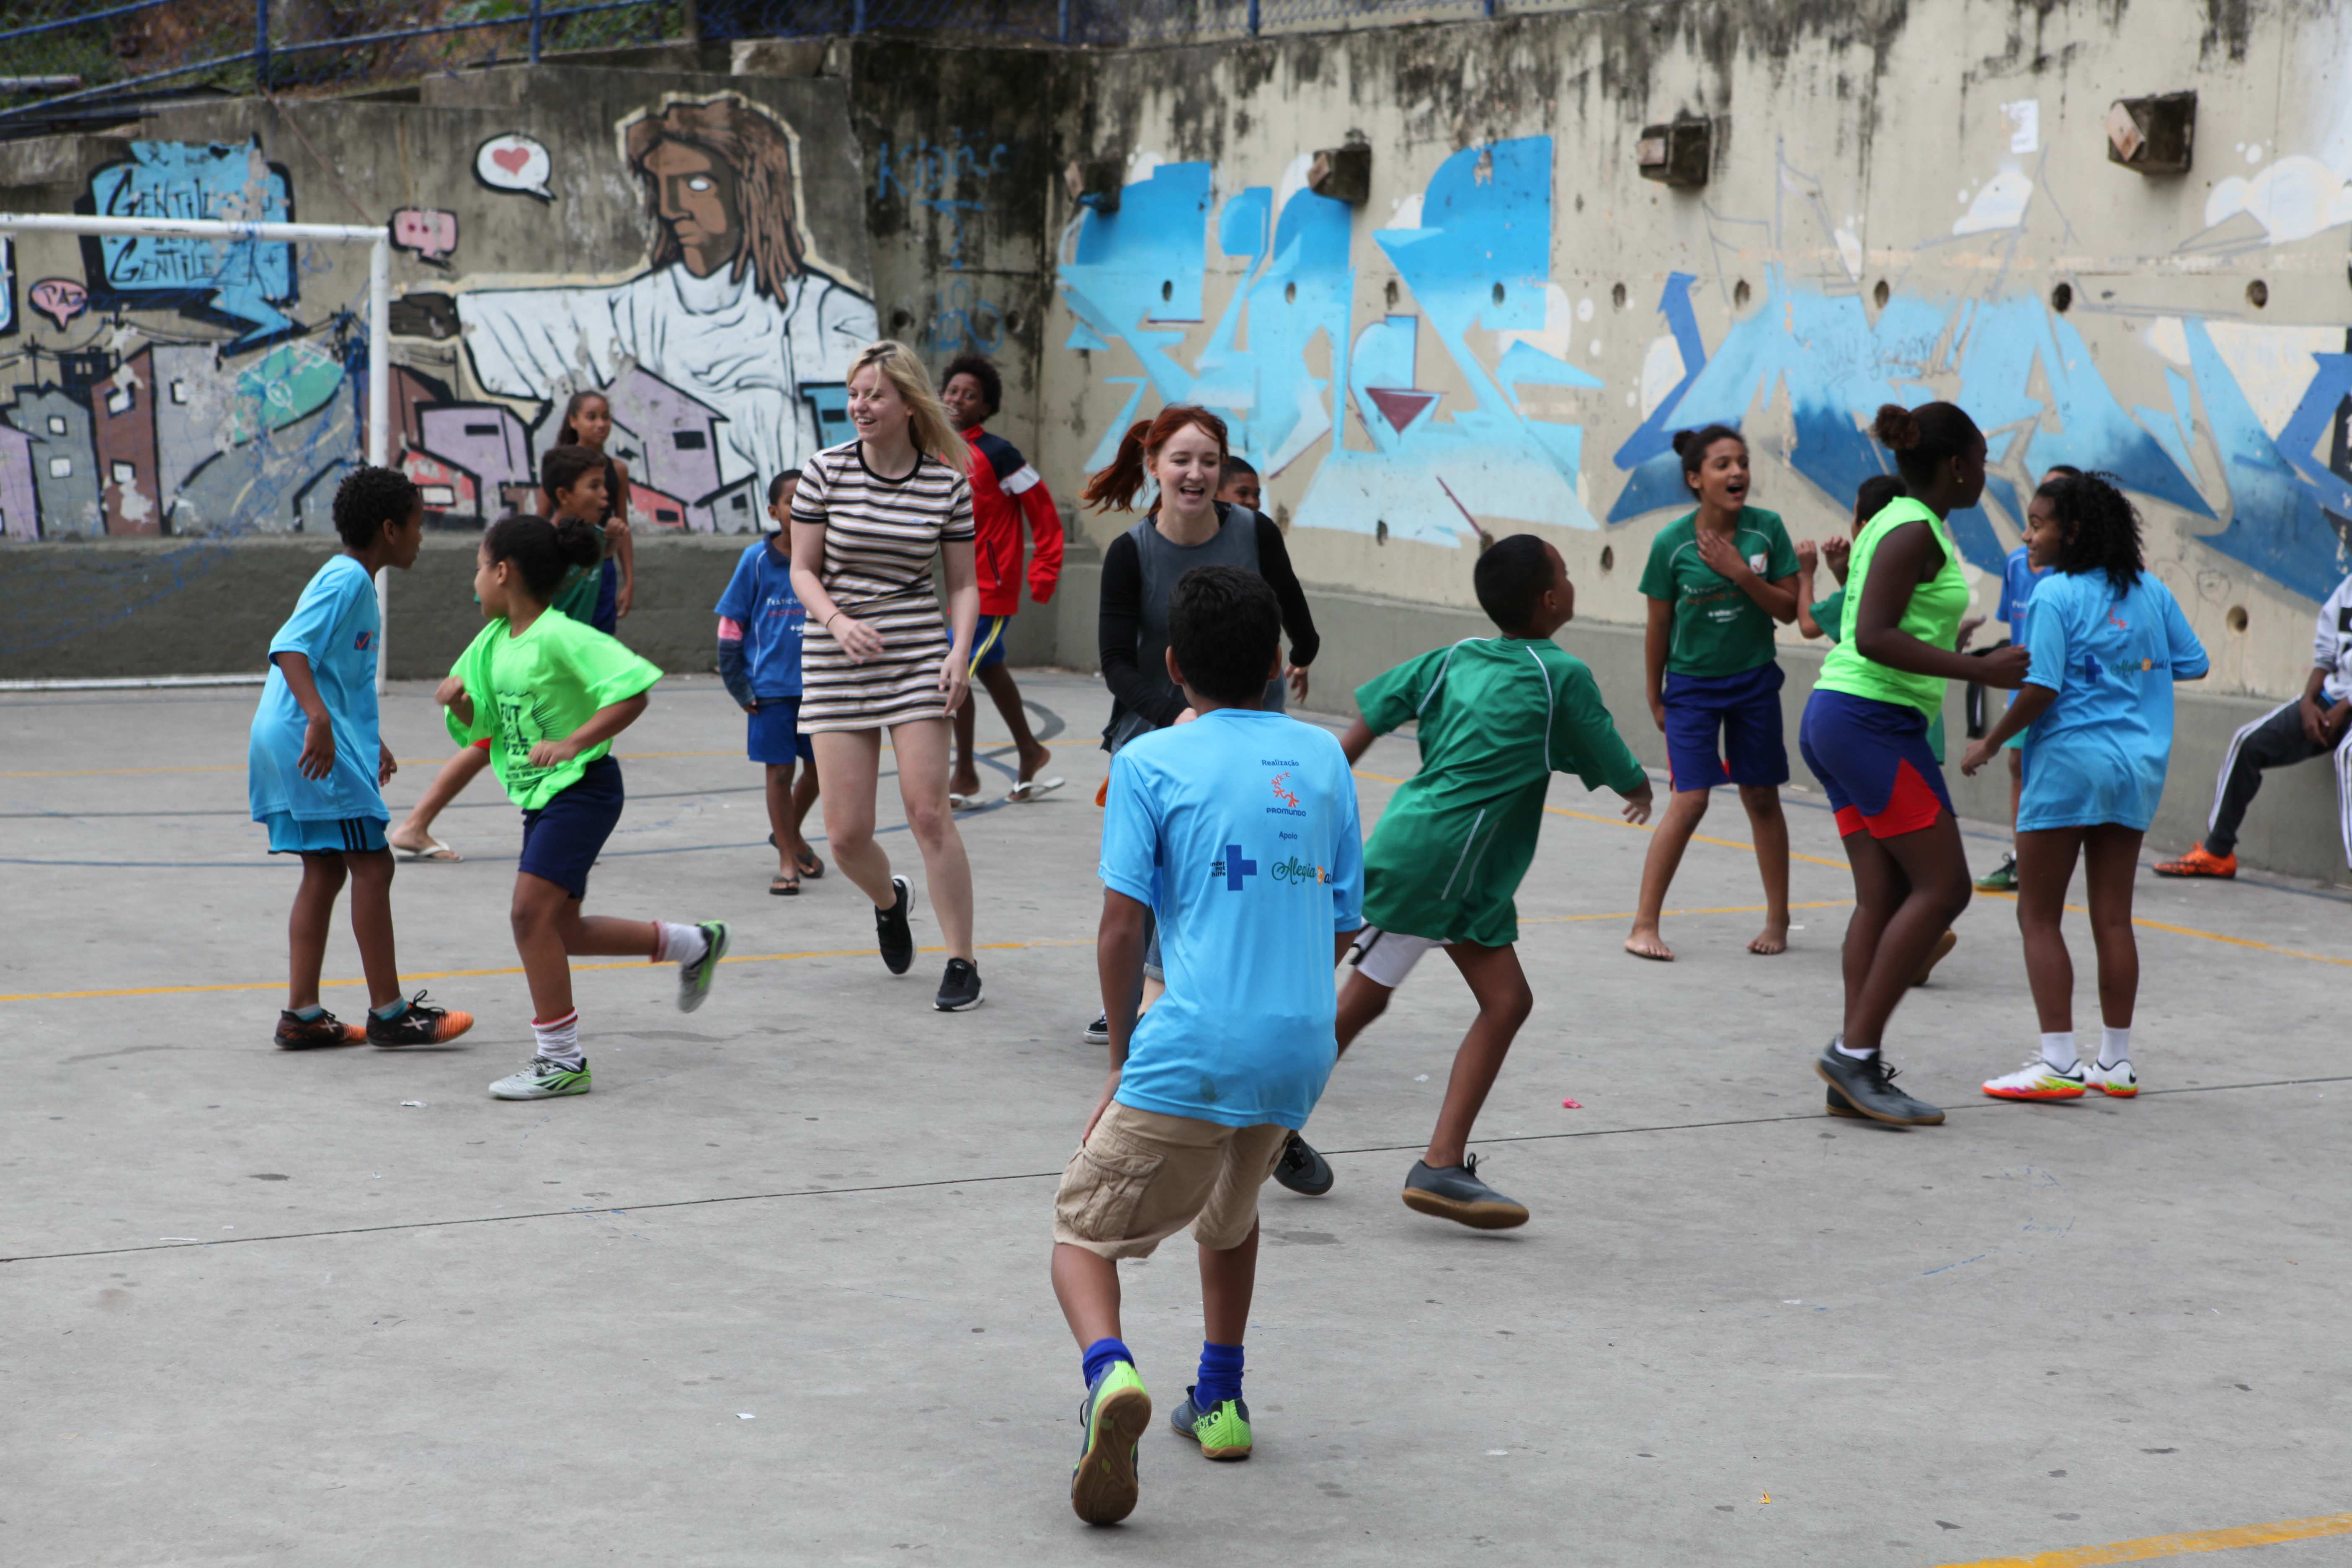 Kinder in Brasilien spielen gemeinsam Fußball. (Quelle: Kindernothilfe)